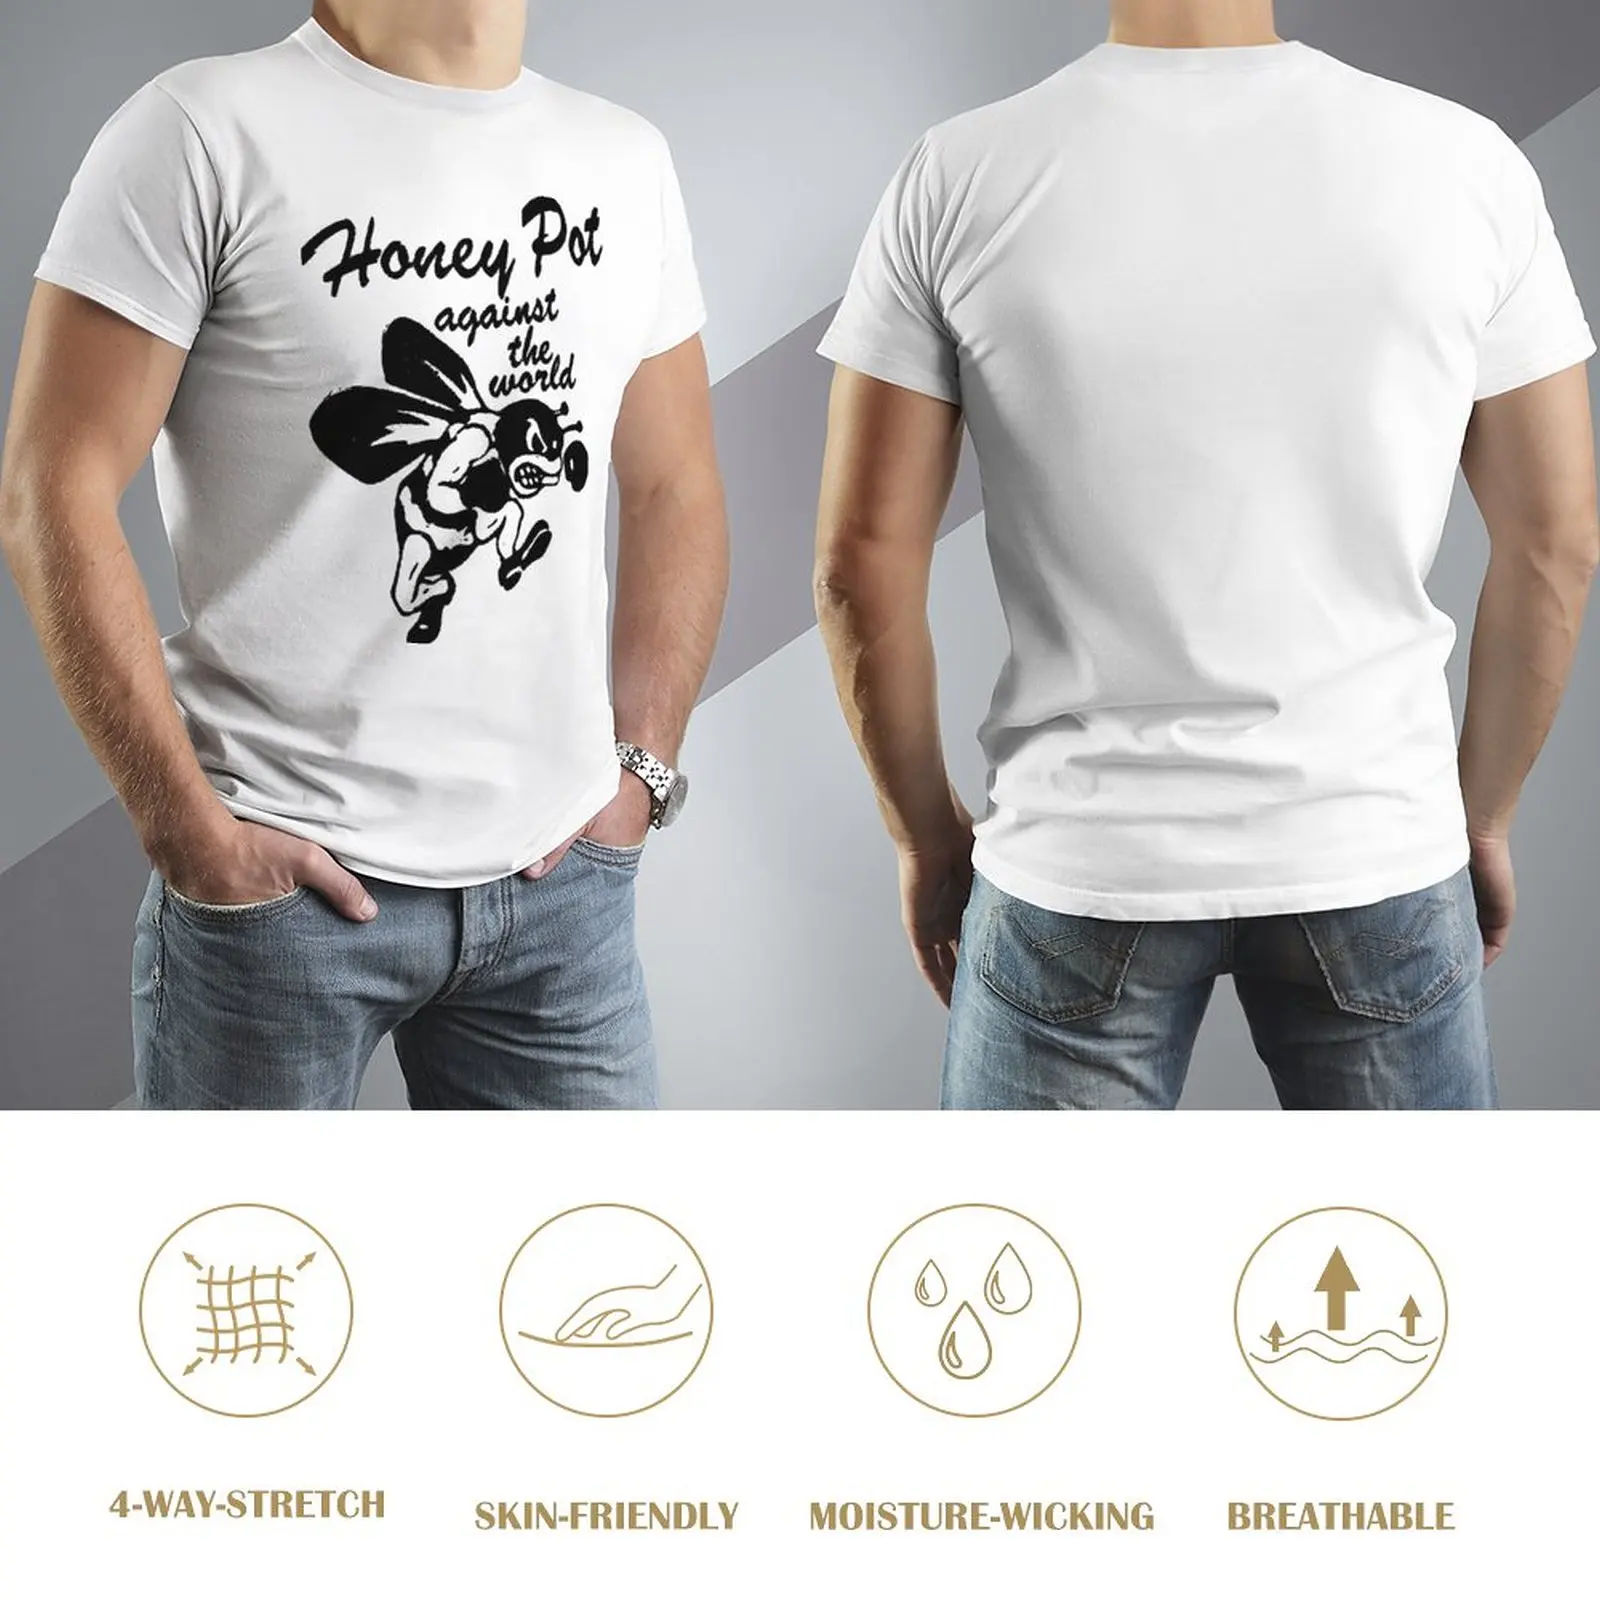 Футболка Honey Pot Against the World, футболка с графикой, футболки для мальчиков, винтажная одежда, великолепная футболка, футболки для мужчин, хлопок Изображение 2